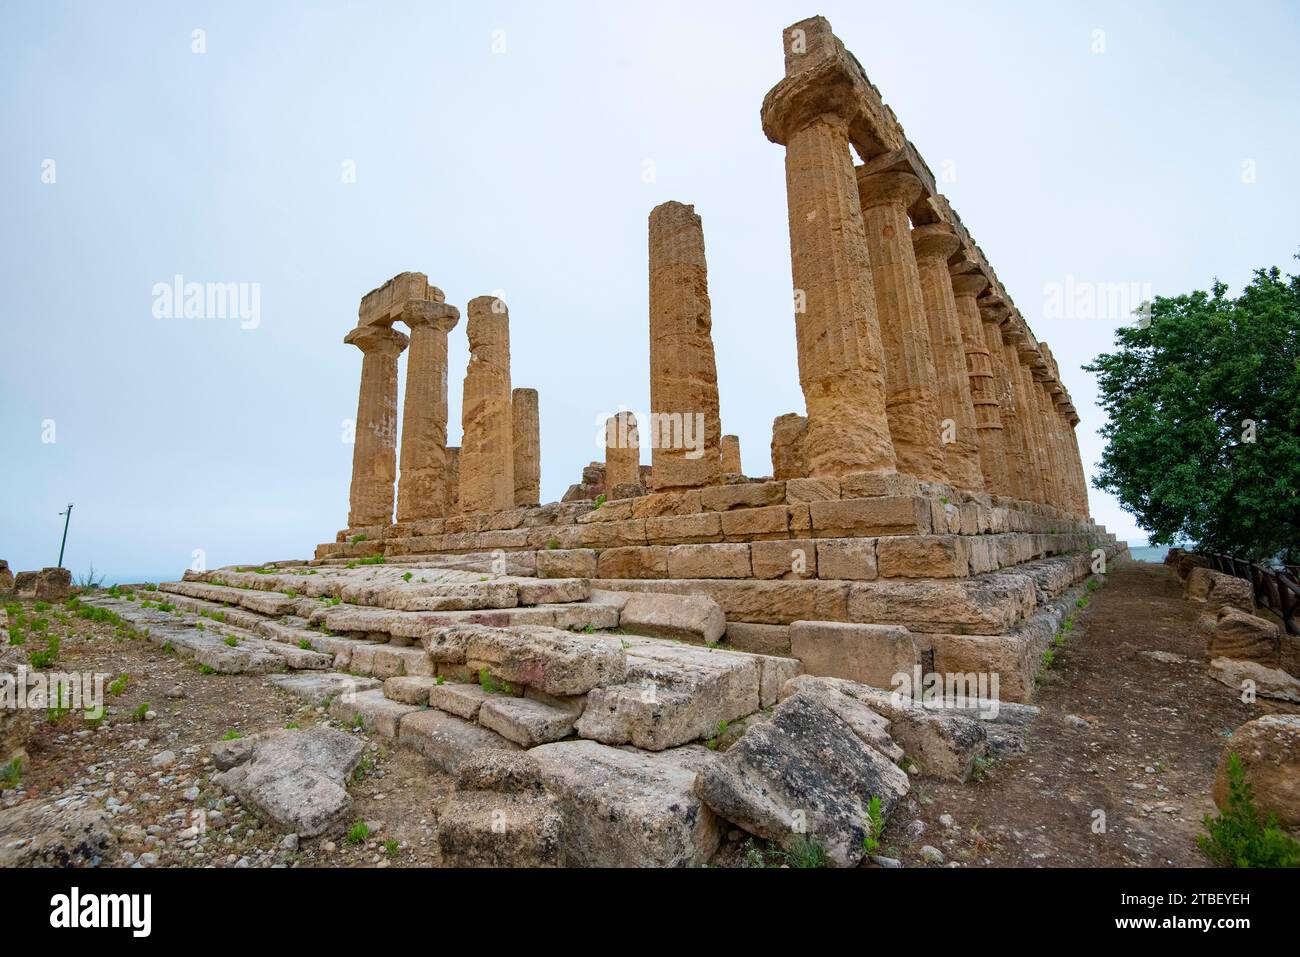 Temple of Juno (Hera Lacinia) - Agrigento - Italy Stock Photo